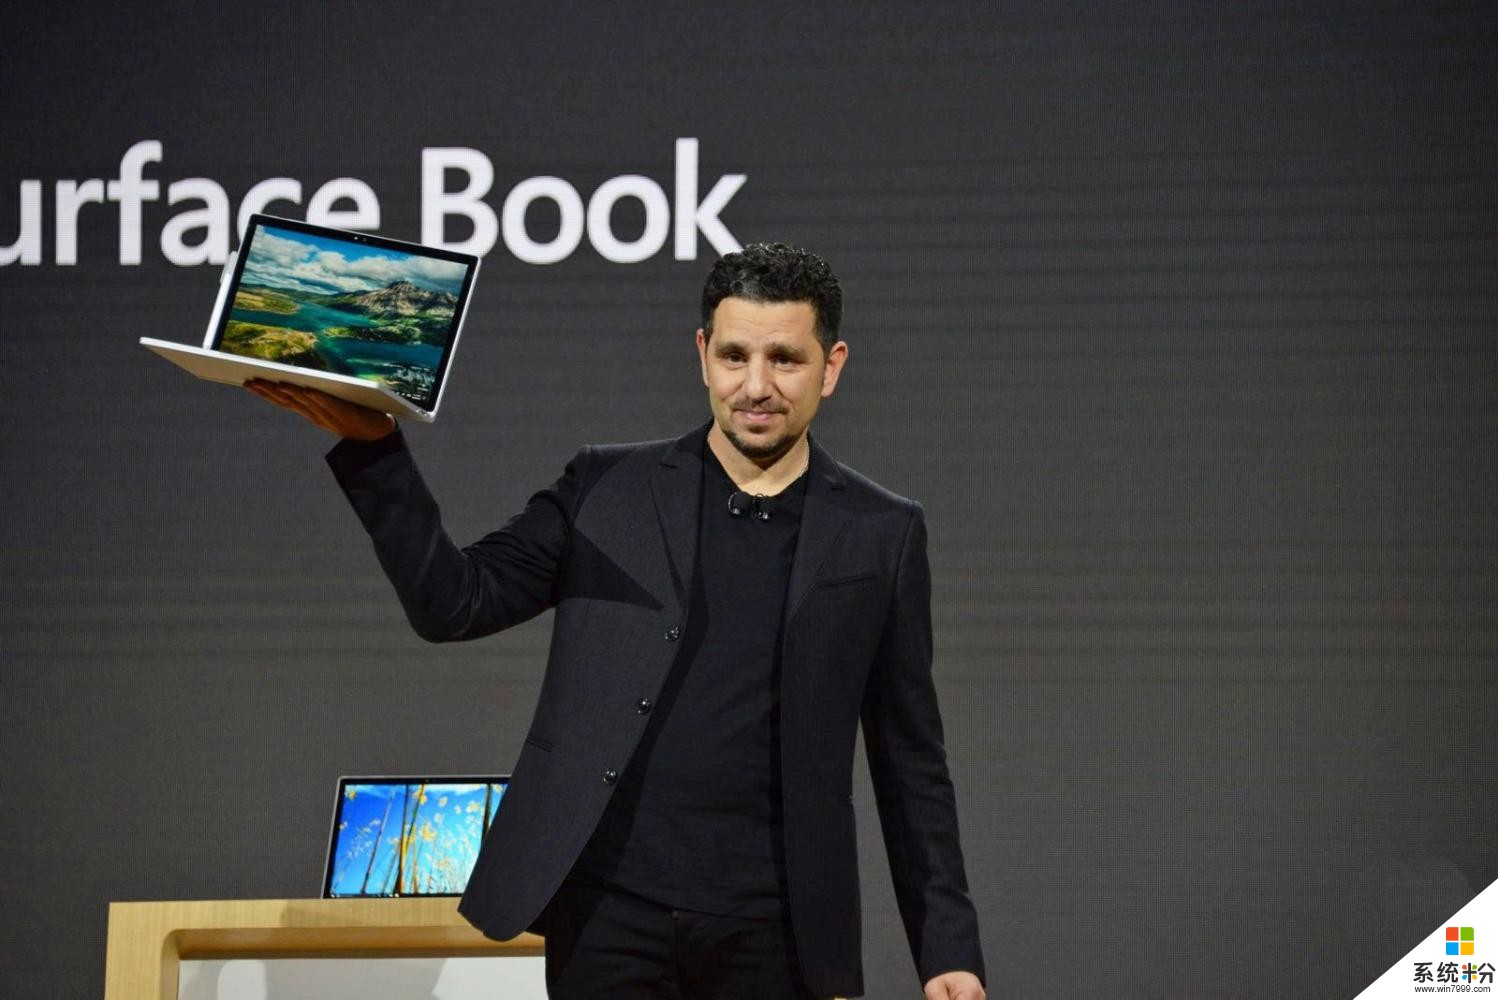 微软将在 10 月 31 日发布 Surface 新品(1)